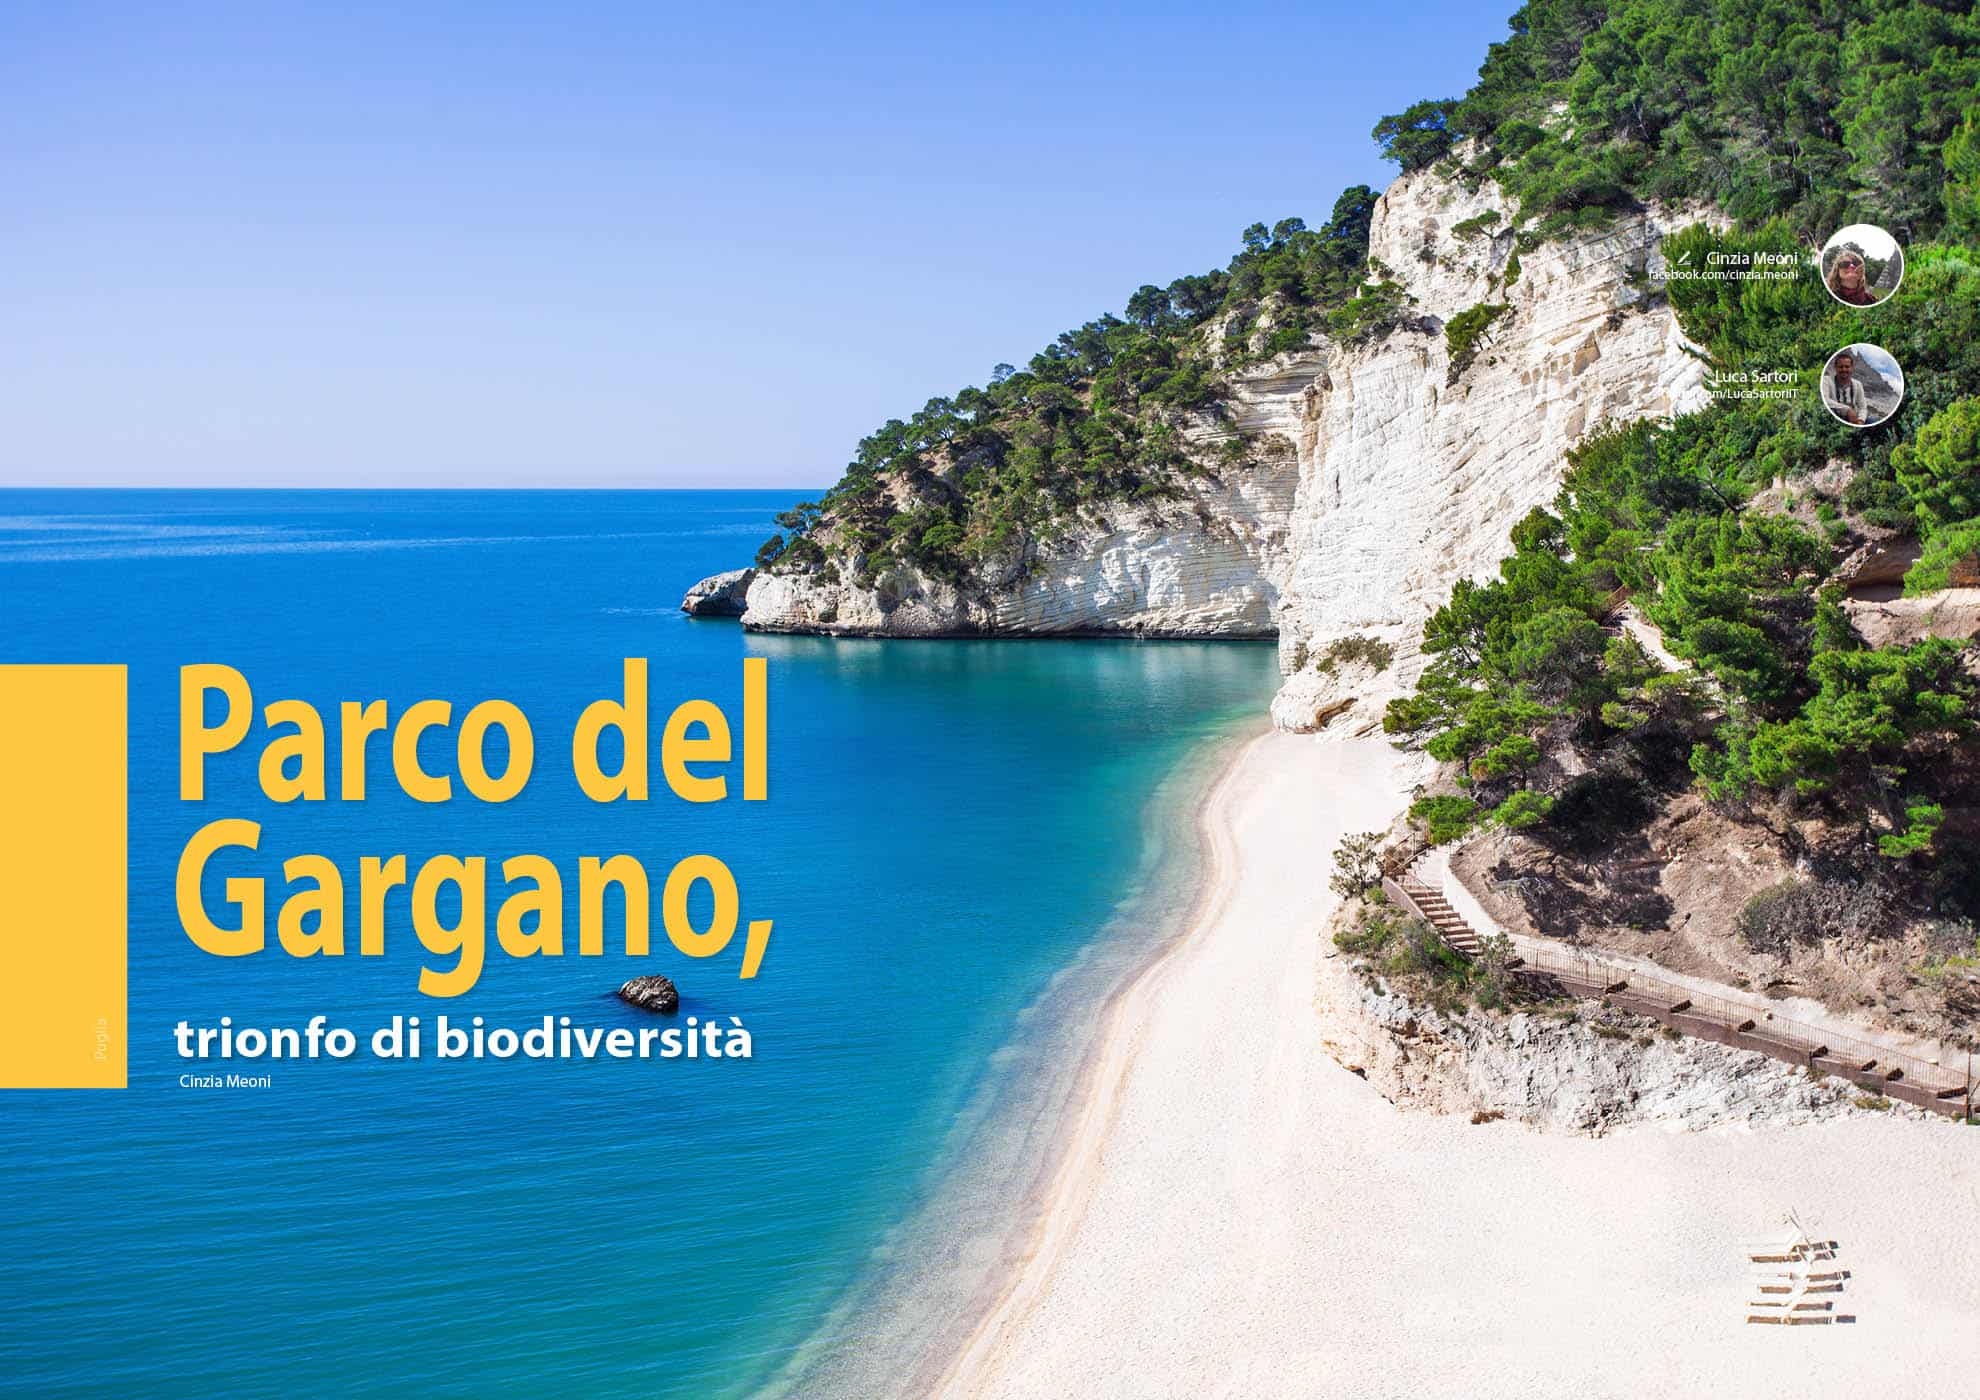 e-borghi travel 3: Parchi e borghi - Parco del Gargano, trionfo di biodiversità